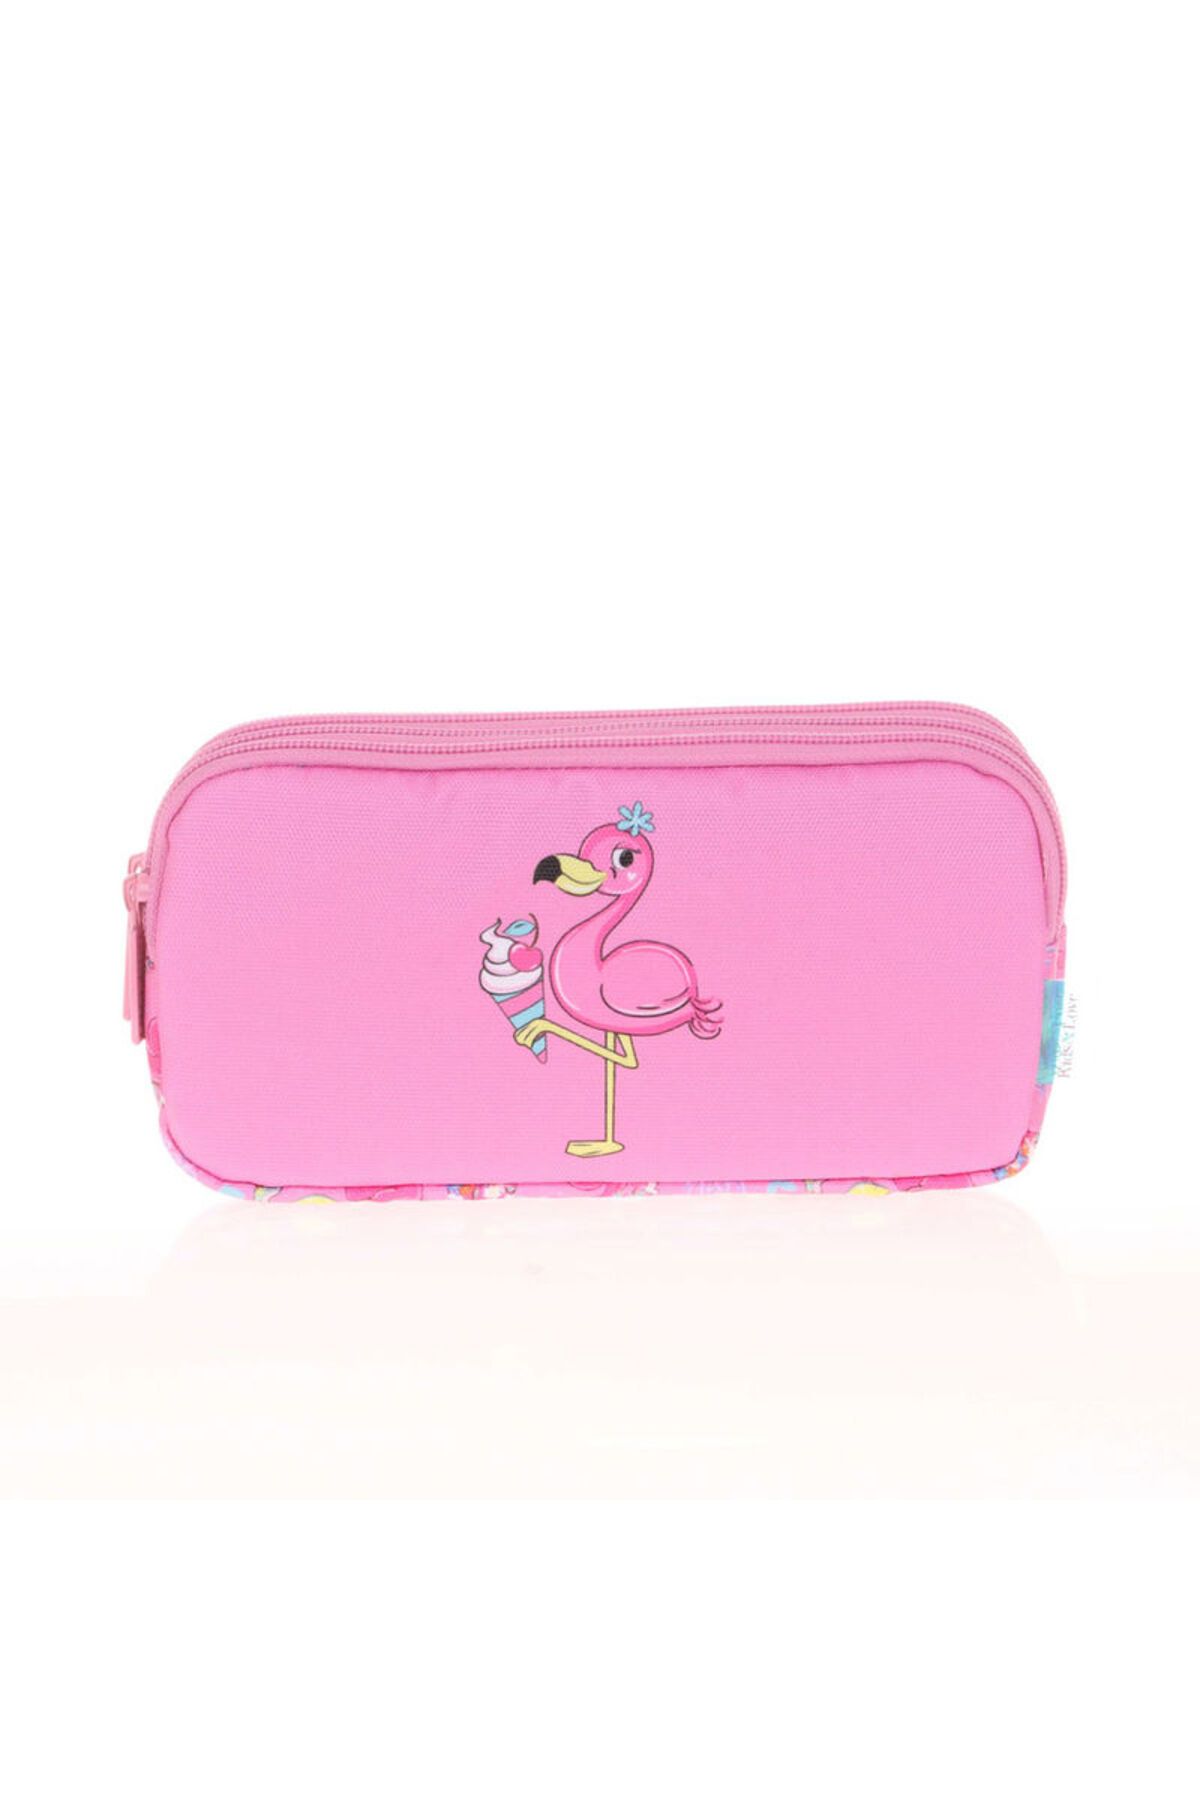 Kaukko Kids&Love Aynalı Taşlı Flamingo 3 Bölmeli Kalemlik Çantası